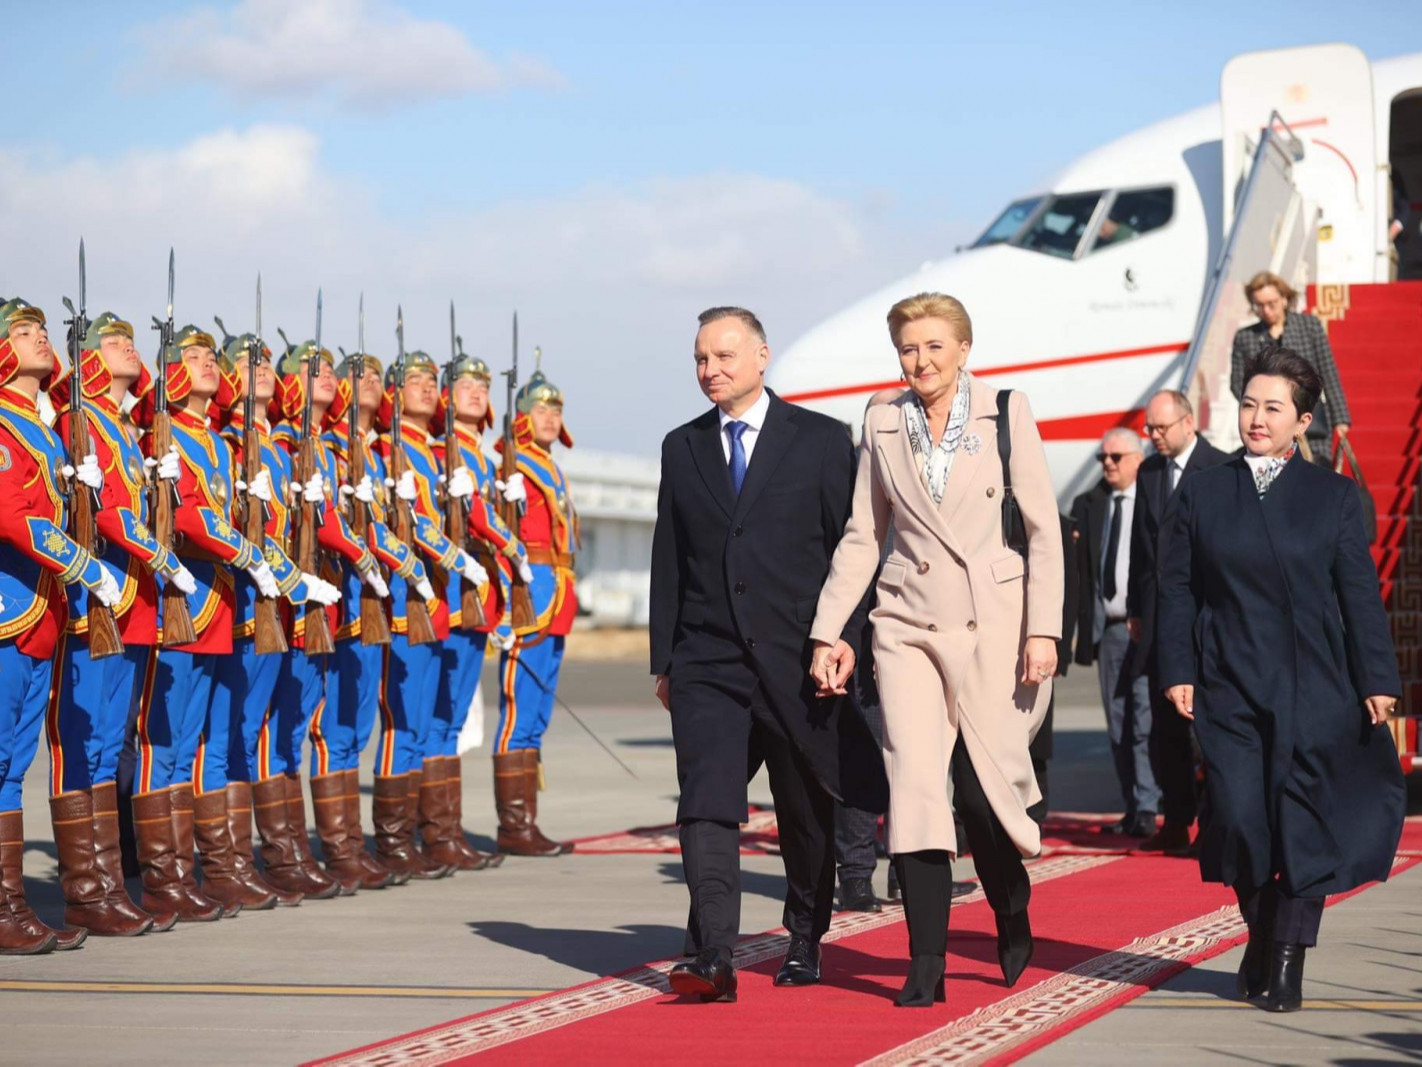 ФОТО: Бүгд Найрамдах Польш Улсын Ерөнхийлөгч Анджей Дуда гэргийн хамт Монгол Улсад хүрэлцэн ирлээ